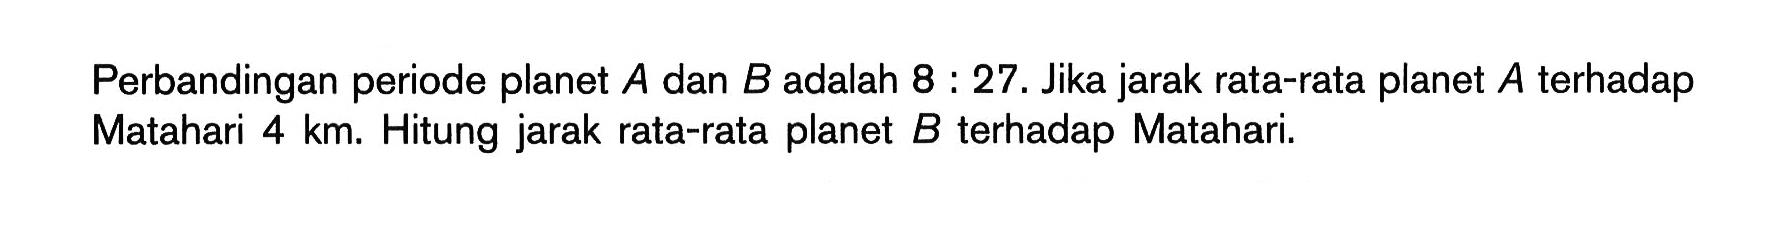 Perbandingan periode planet A dan B adalah 8:27. Jika jarak rata-rata planet  A  terhadap Matahari 4 km. Hitung jarak rata-rata planet  B terhadap Matahari.